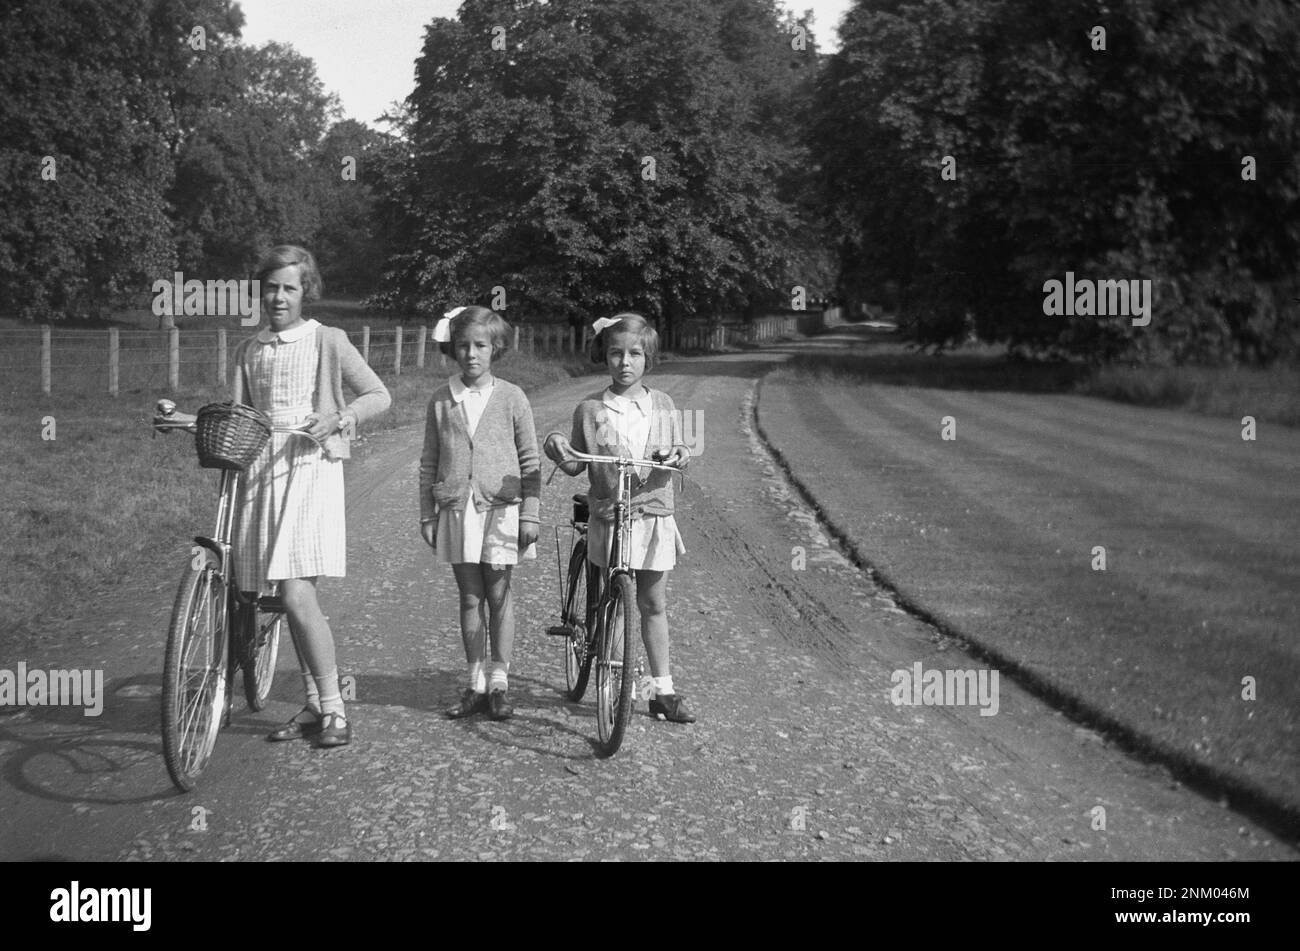 1934, histórico, regresando a casa de la escuela, tres jóvenes colegialas, dos con sus bicicletas, afuera en un camino de grava de una finca rural, Inglaterra, Reino Unido. Foto de stock